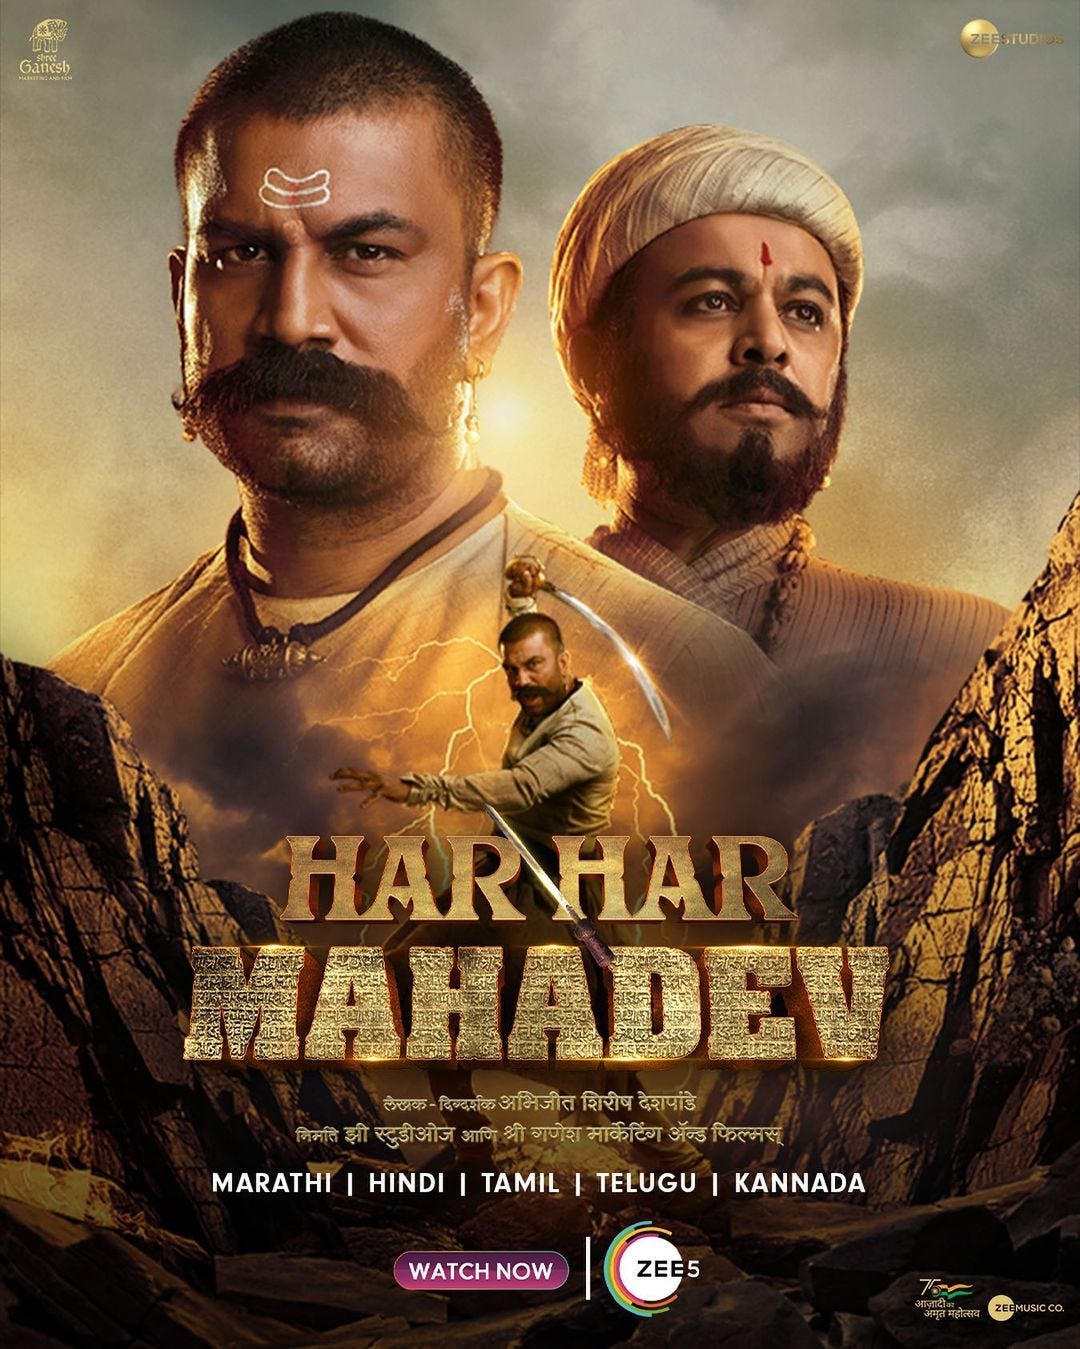 har har mahadev marathi movie review